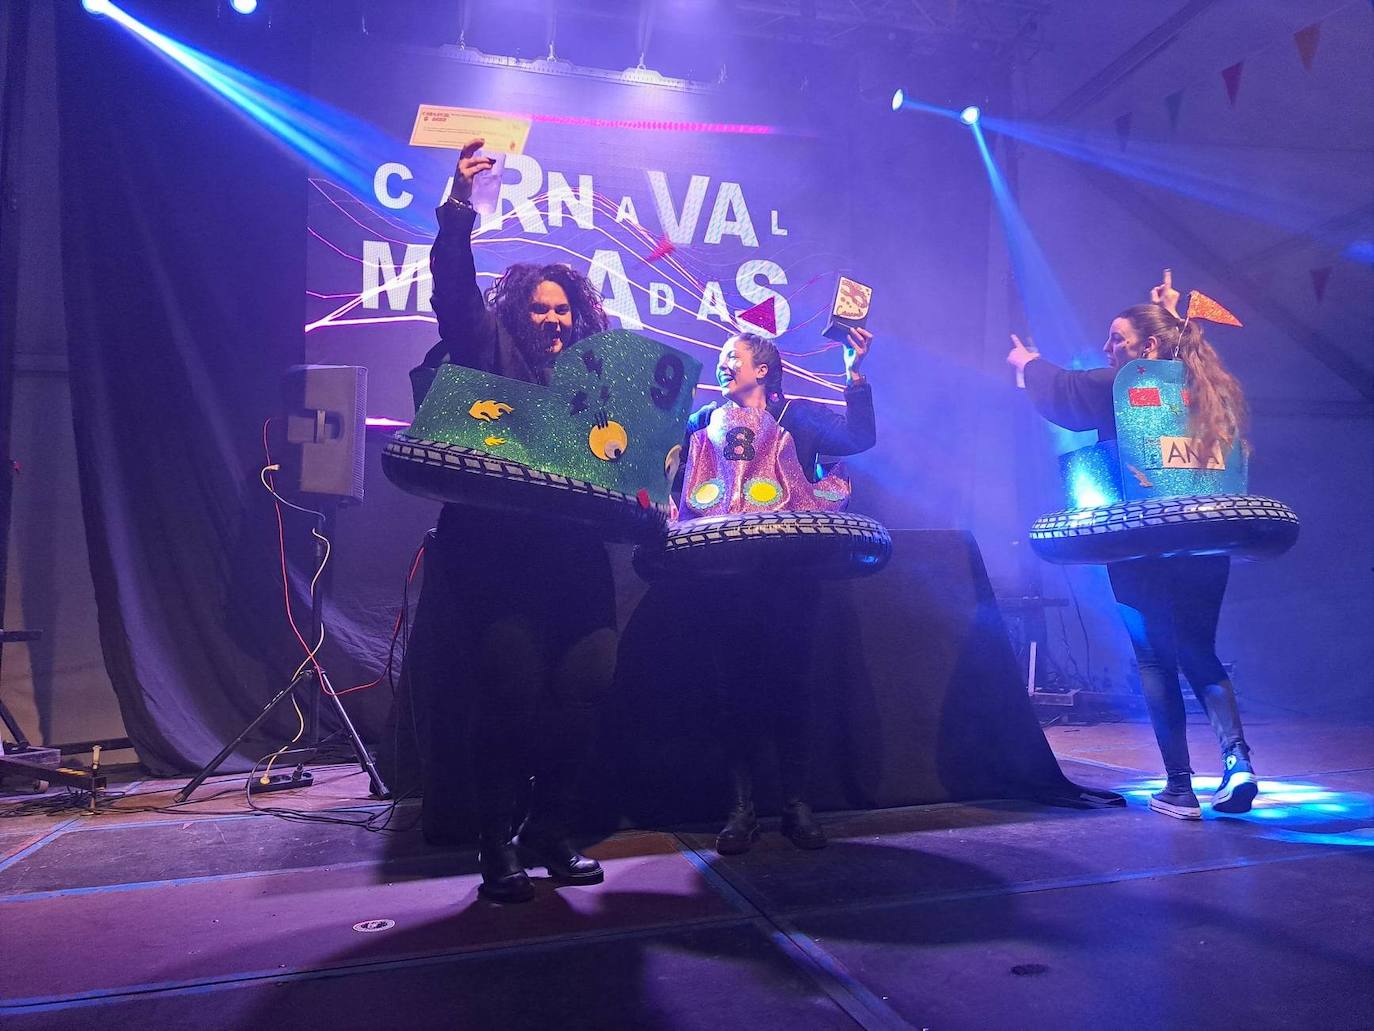 Miajadas celebró su Concurso de disfraces del Carnaval 2023, en el que hubo mucho baile y mucho' cachondeo'. El grupo 'Pista de choque' fue el ganador del primer premio, dotado de 300 euros, mientras que 'DJ's' consiguieron el segundo premio con 200 euros, y 'Desplieque Lolil' se hizo con los 150 euros del tercer premio. 